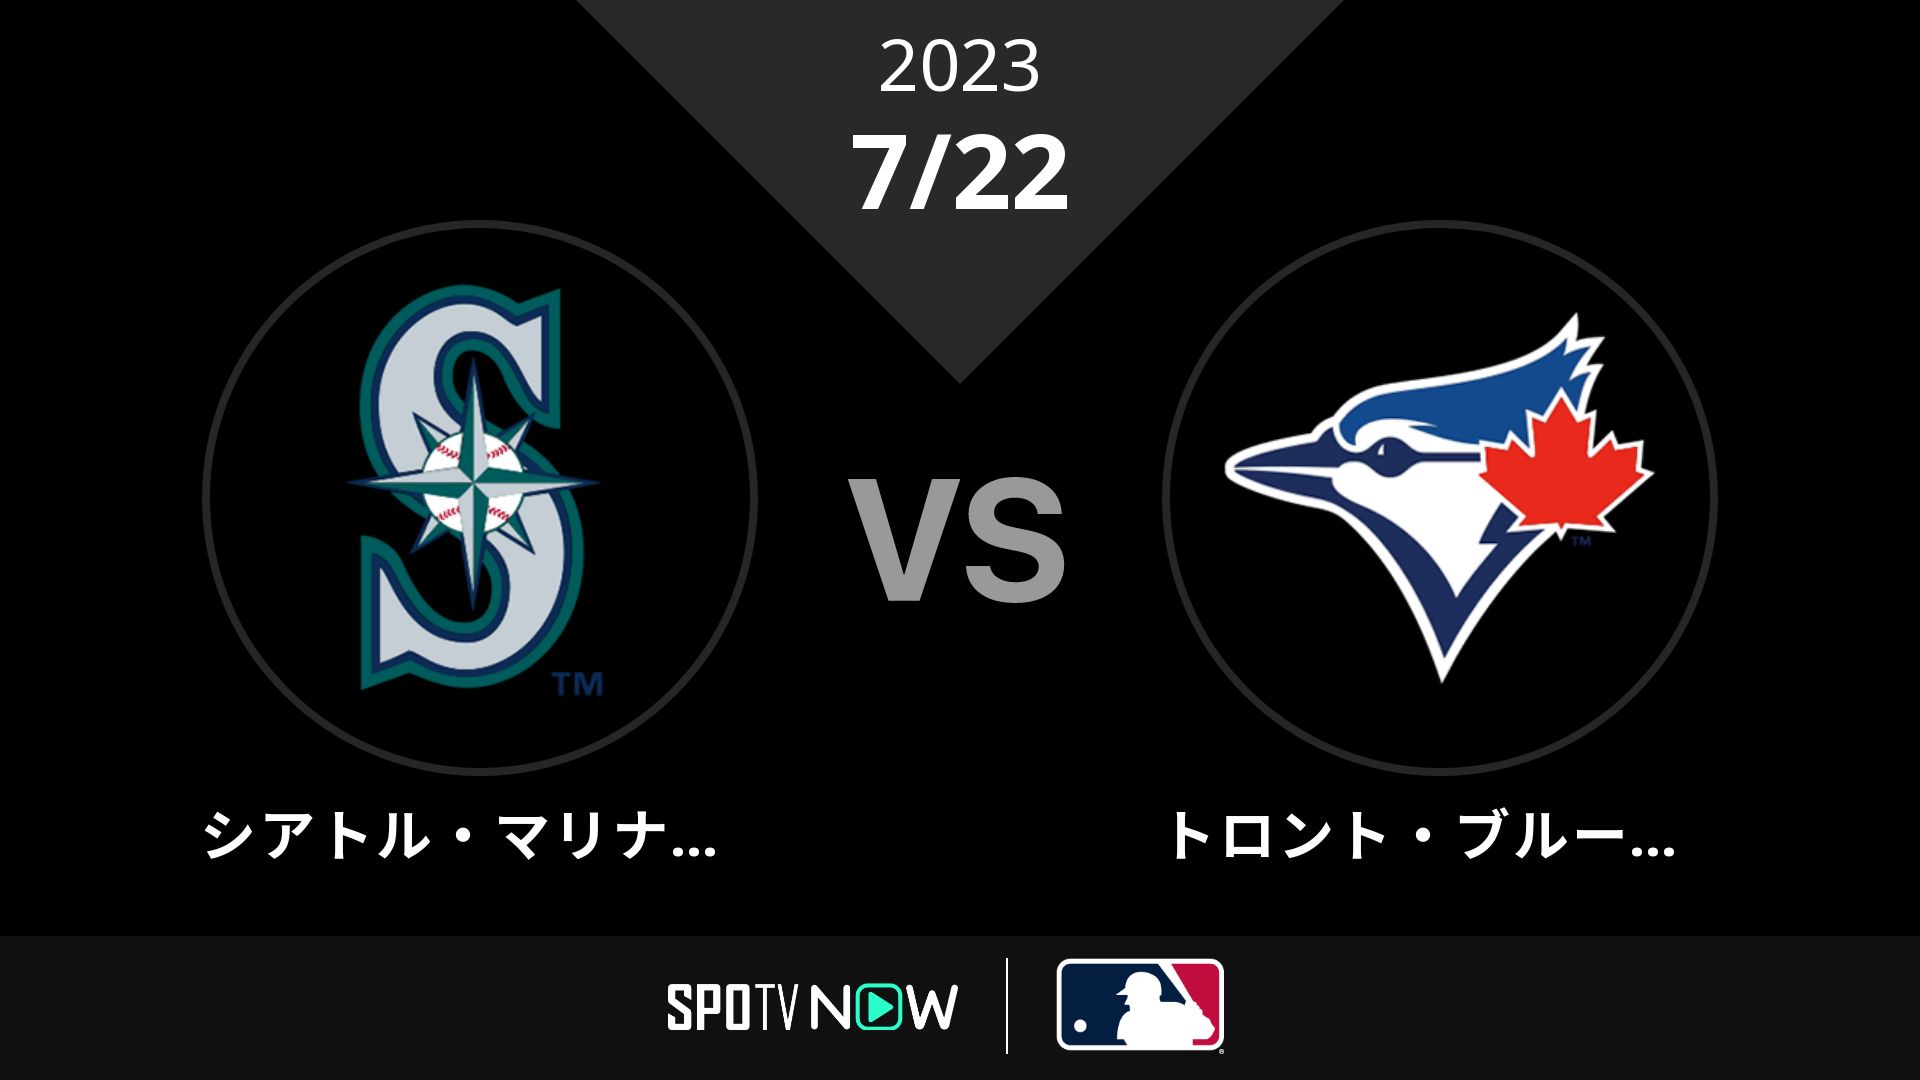 2023/7/22 マリナーズ vs ブルージェイズ [MLB]